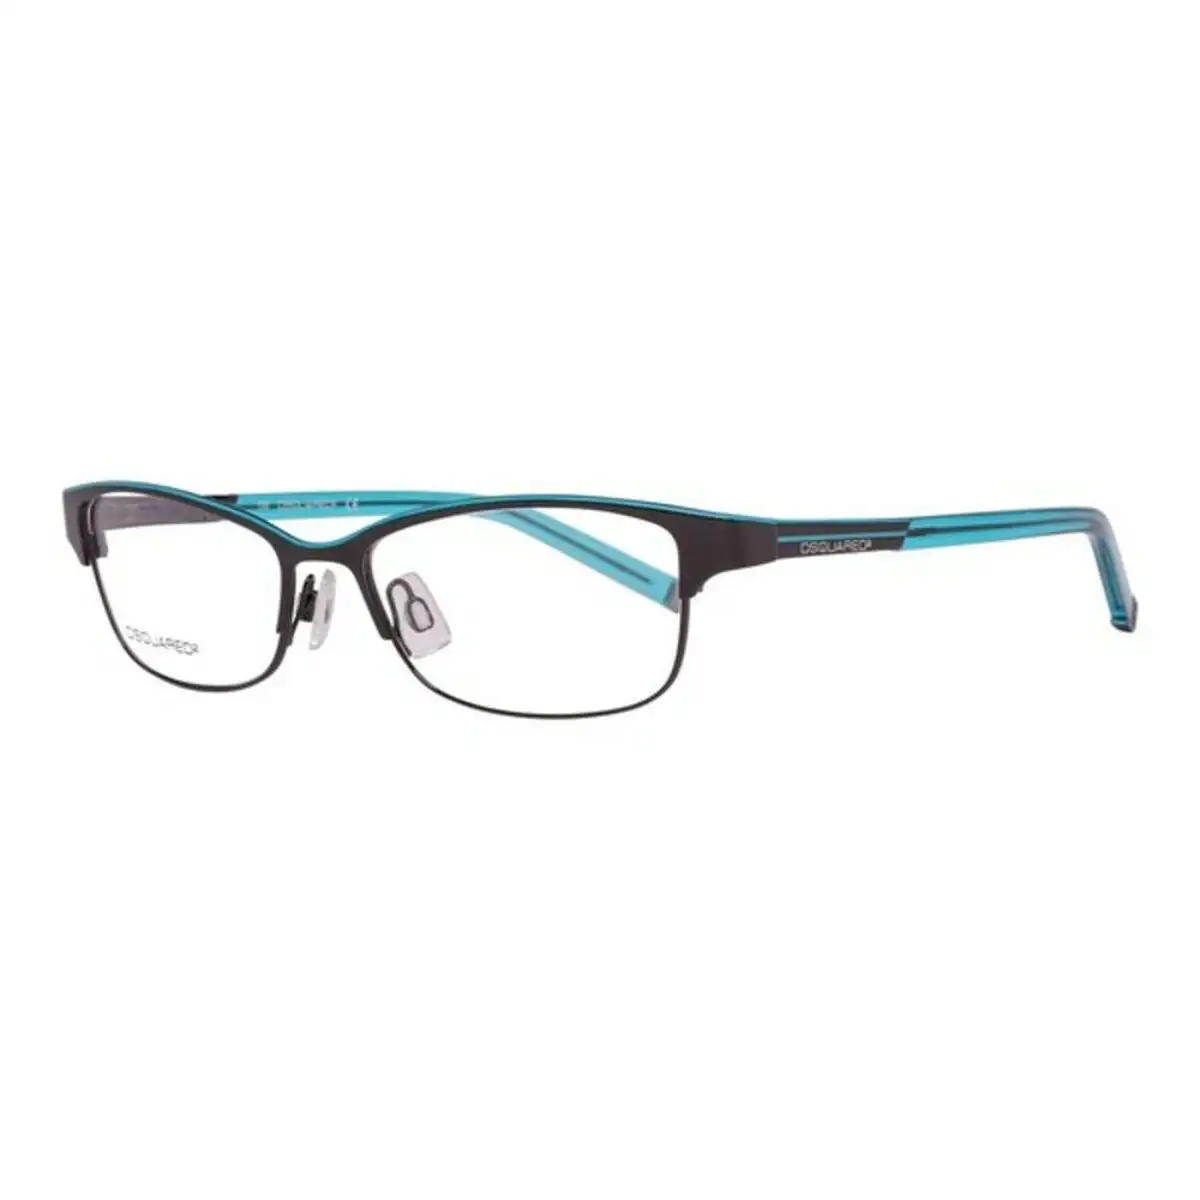 Monture de lunettes femme dsquared2 dq5002 002 noir o 51 mm _8320. DIAYTAR SENEGAL - Là où Chaque Produit est une Trouvaille Unique. Découvrez notre boutique en ligne et trouvez des articles qui vous distinguent par leur originalité.